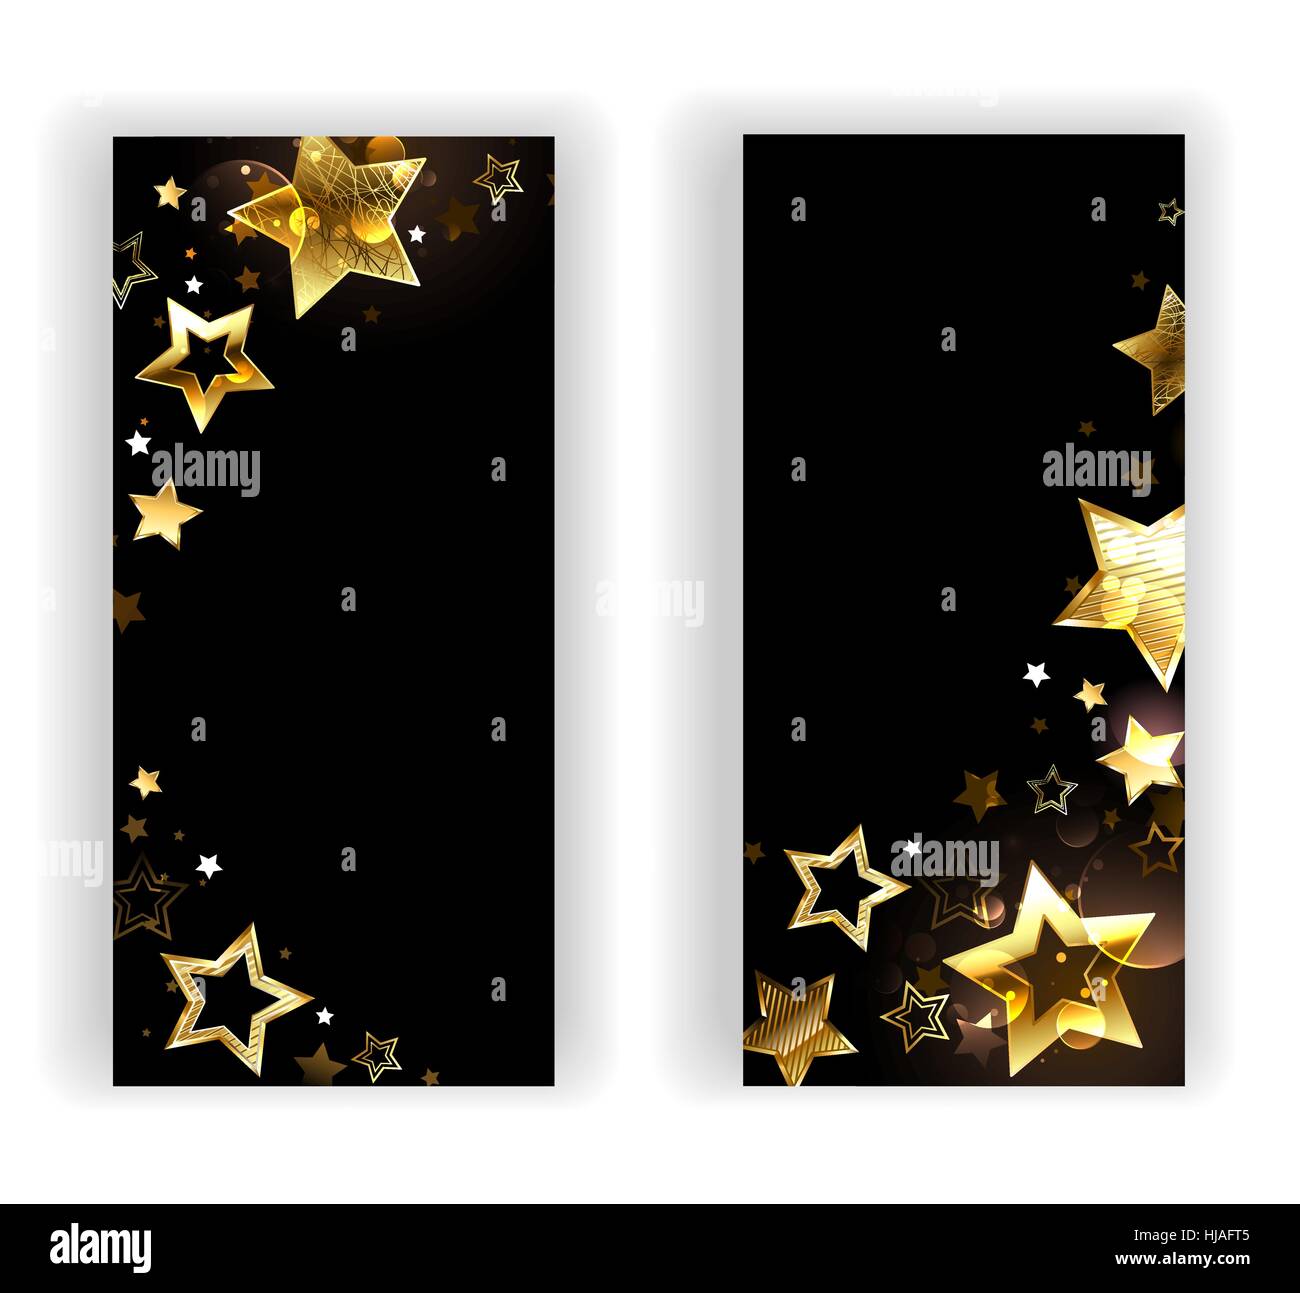 Deux bannières avec de petites étoiles or brillant, sur un fond noir. Conception avec étoiles d'or. Illustration de Vecteur